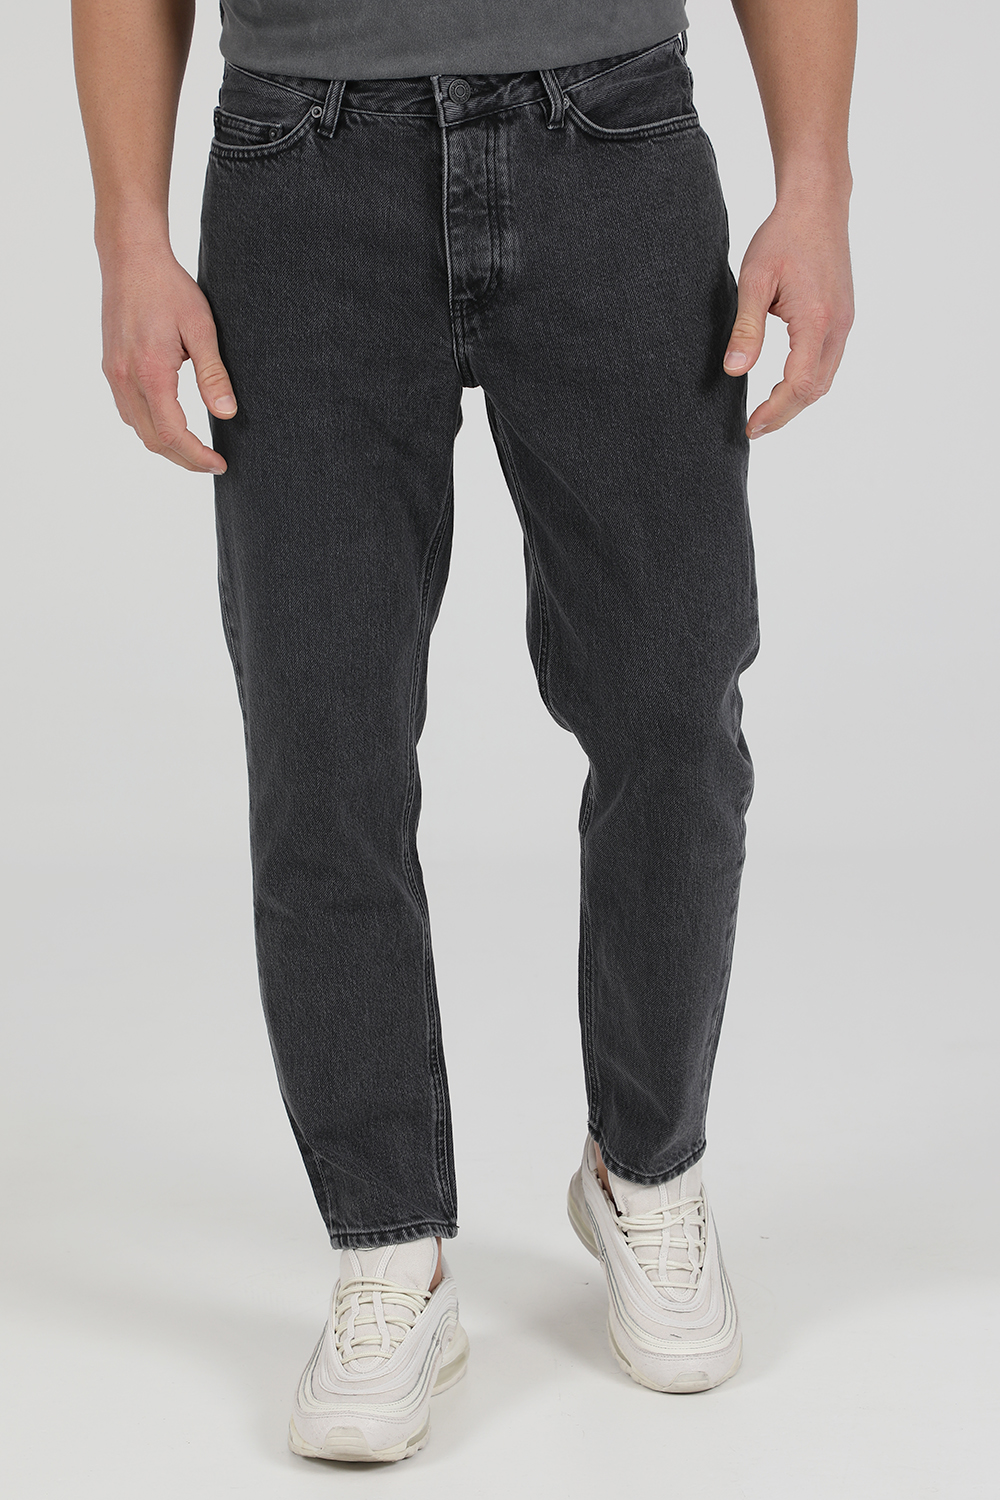 Ανδρικά/Ρούχα/Τζίν/Straight AMERICAN VINTAGE - Ανδρικό jean παντελόνι AMERICAN VINTAGE MYOP61 γκρι